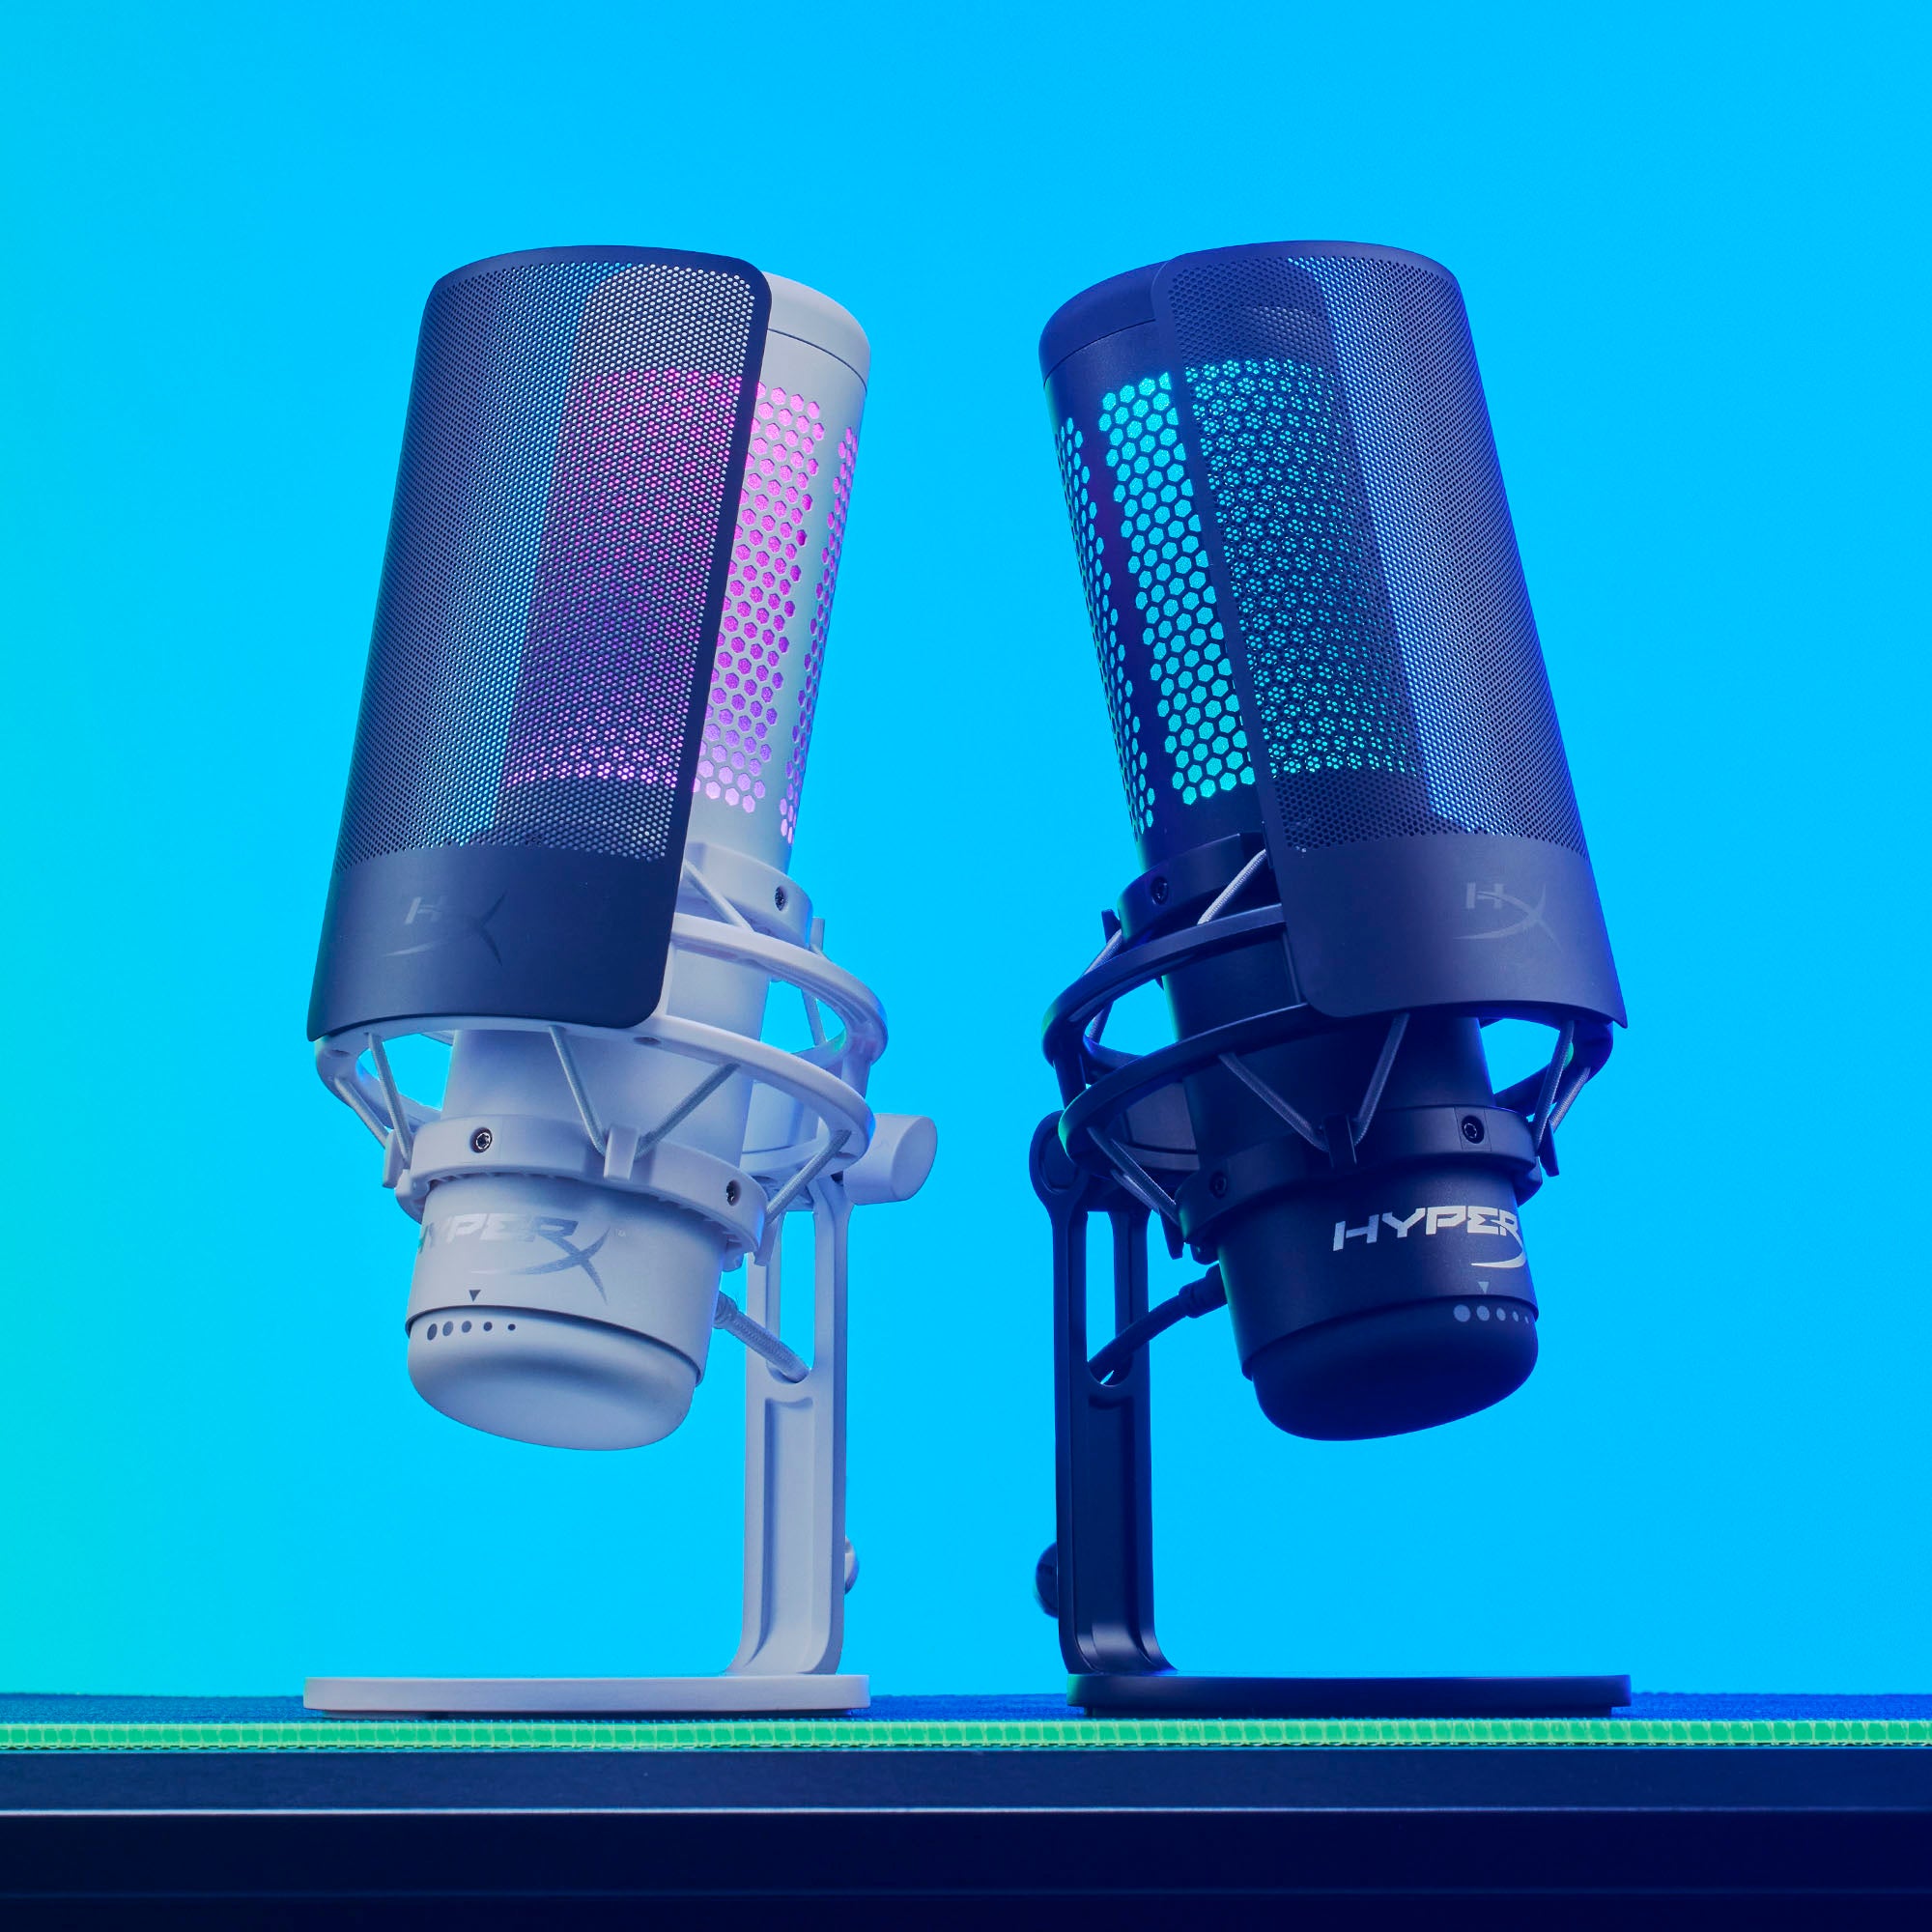 Microphone HyperX QuadCast S / Noir / RGB